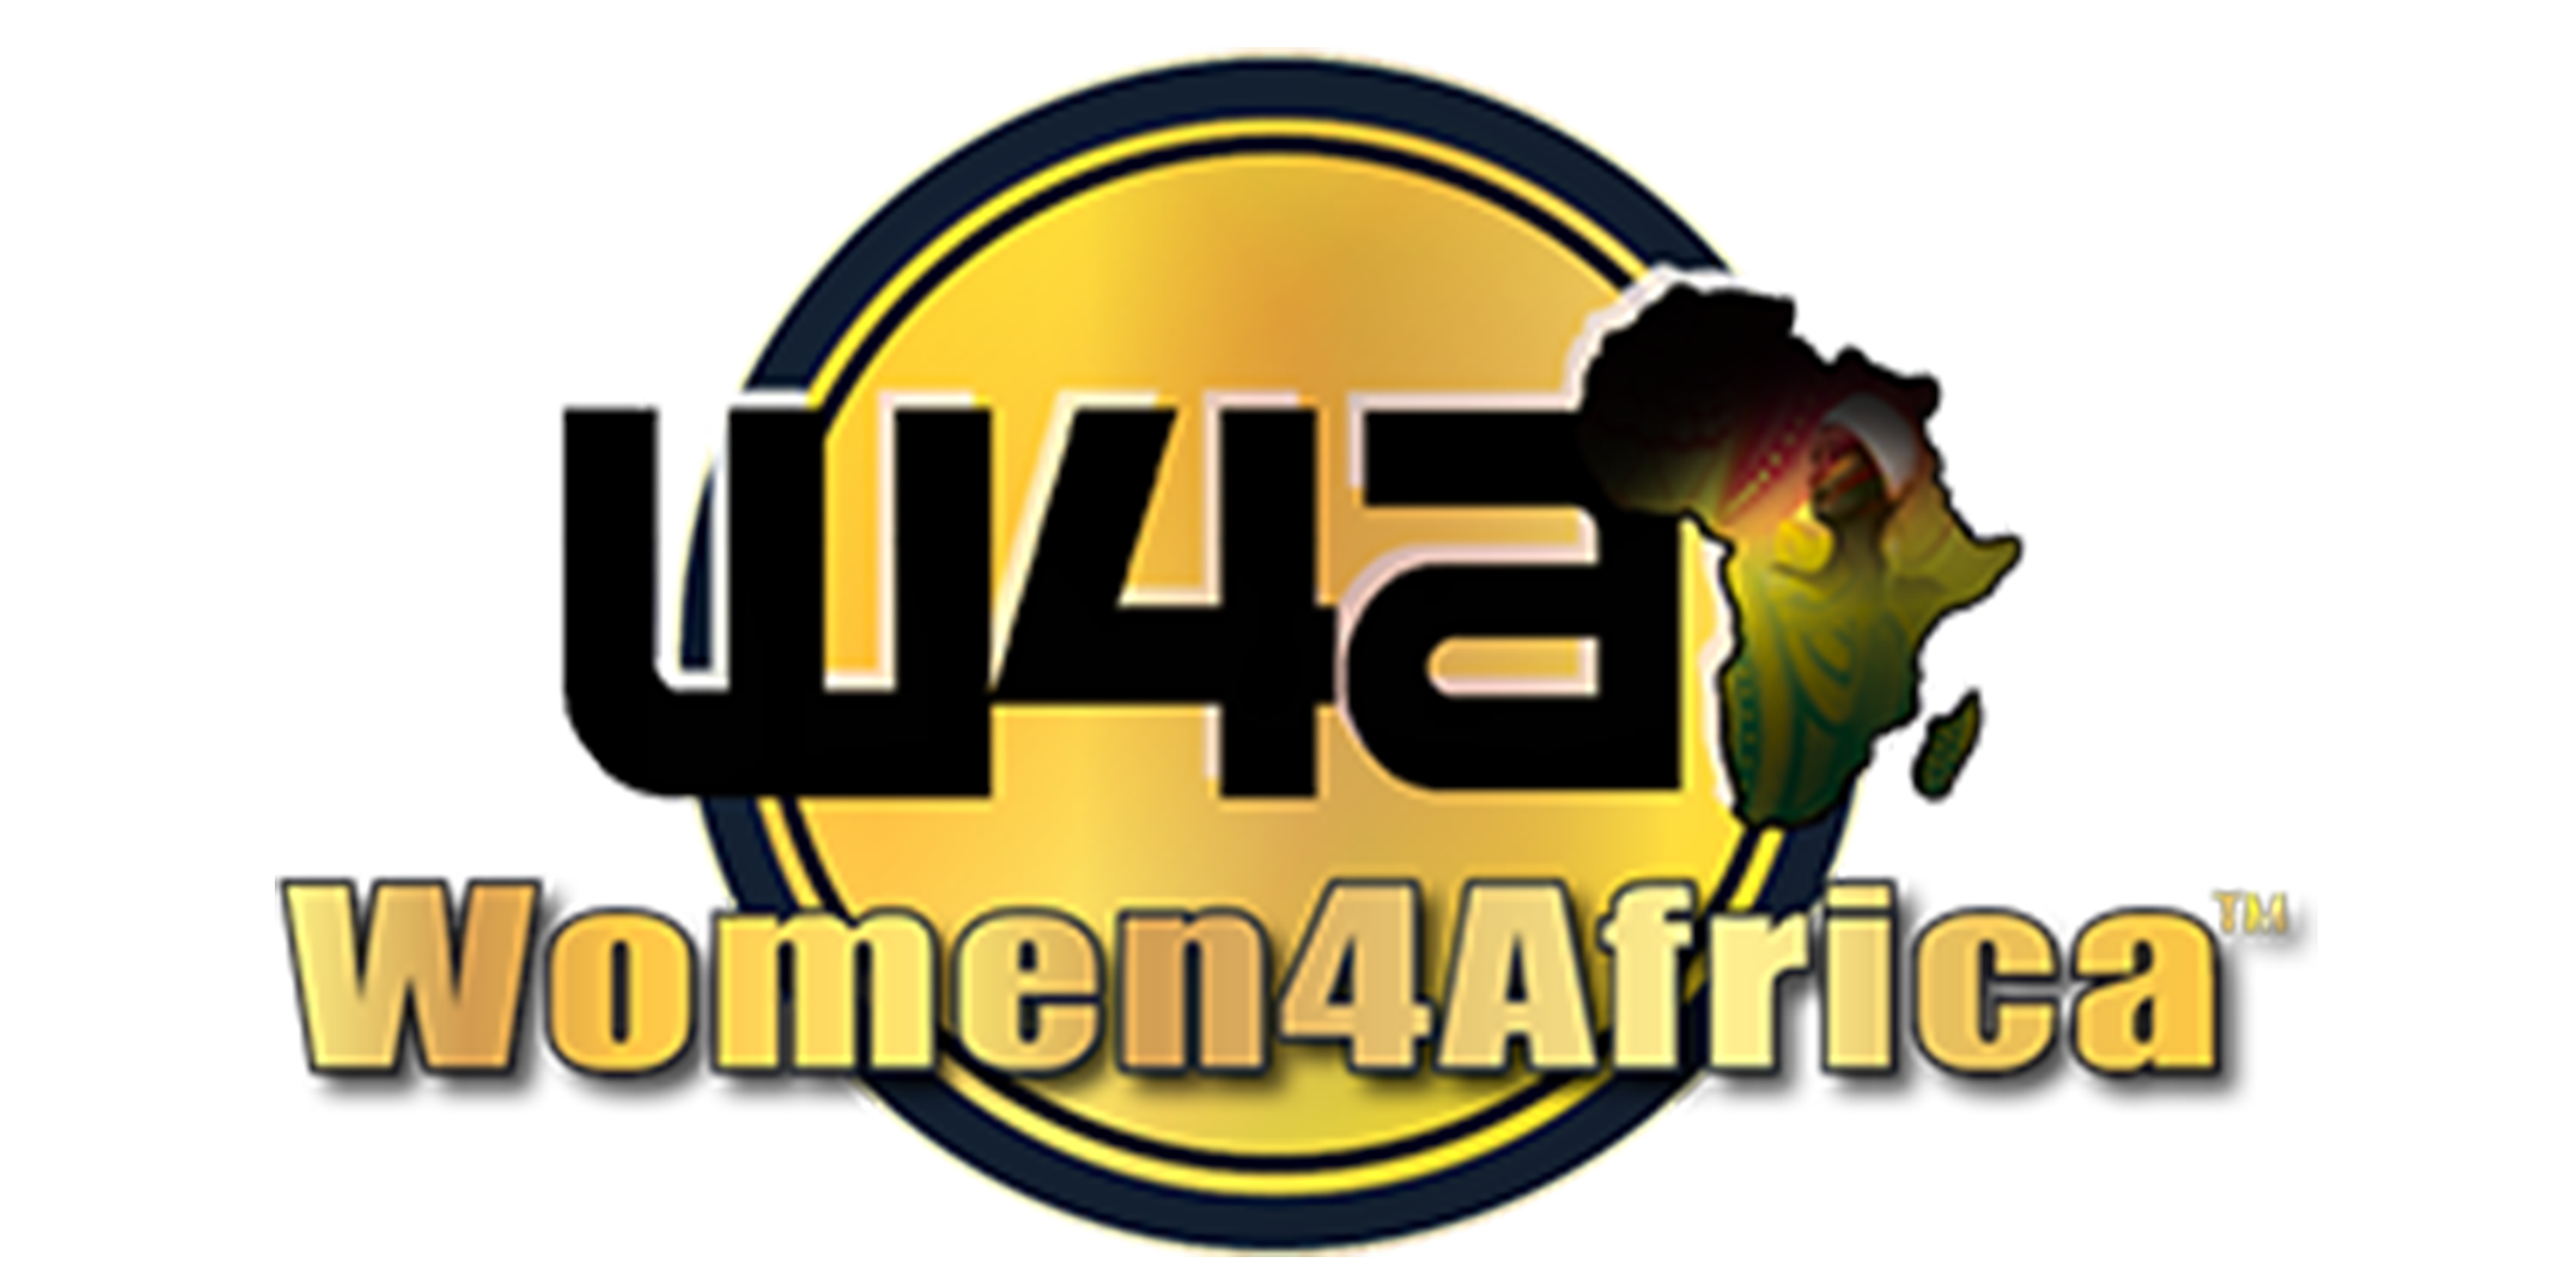 Women For Africa logo